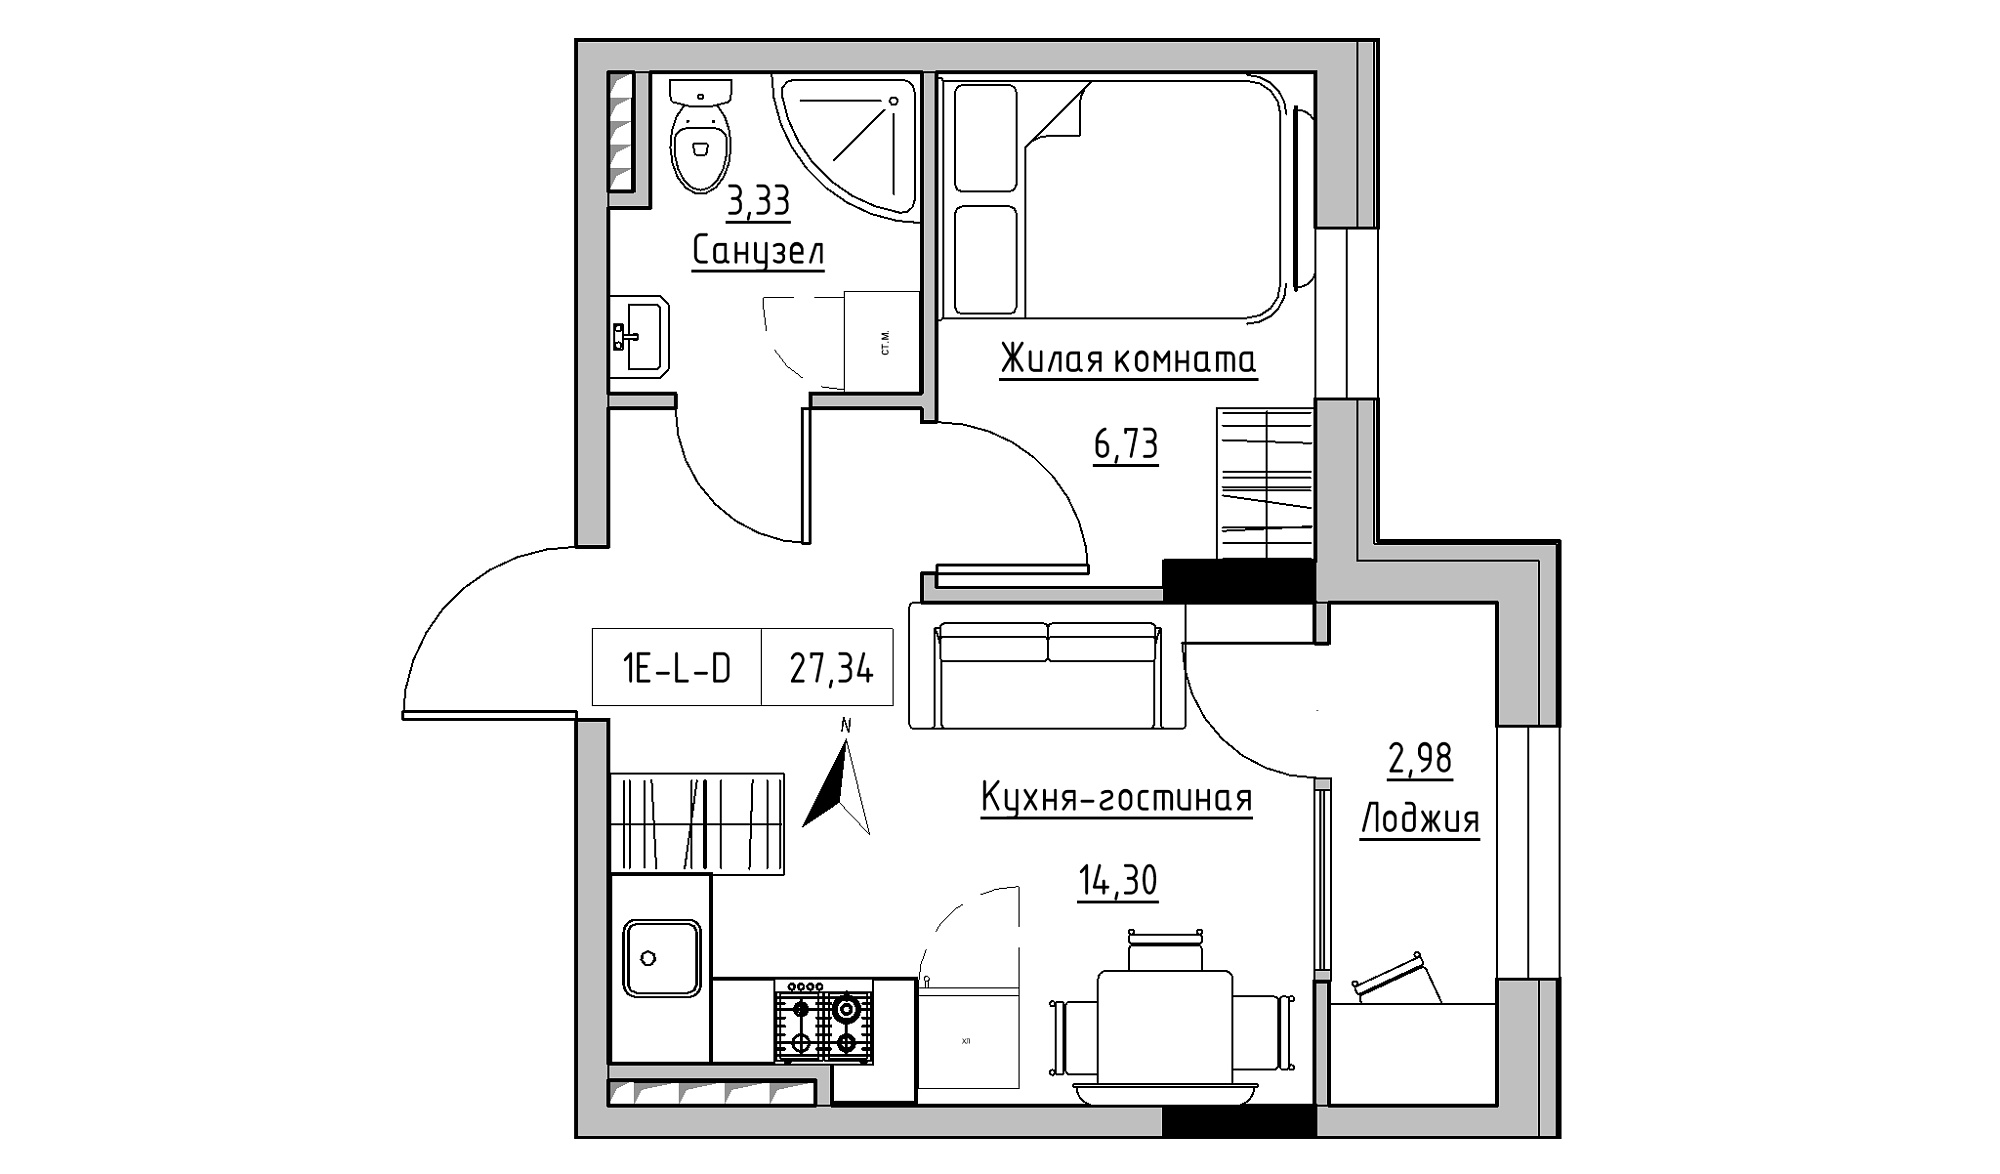 Планування 1-к квартира площею 27.34м2, KS-025-04/0001.